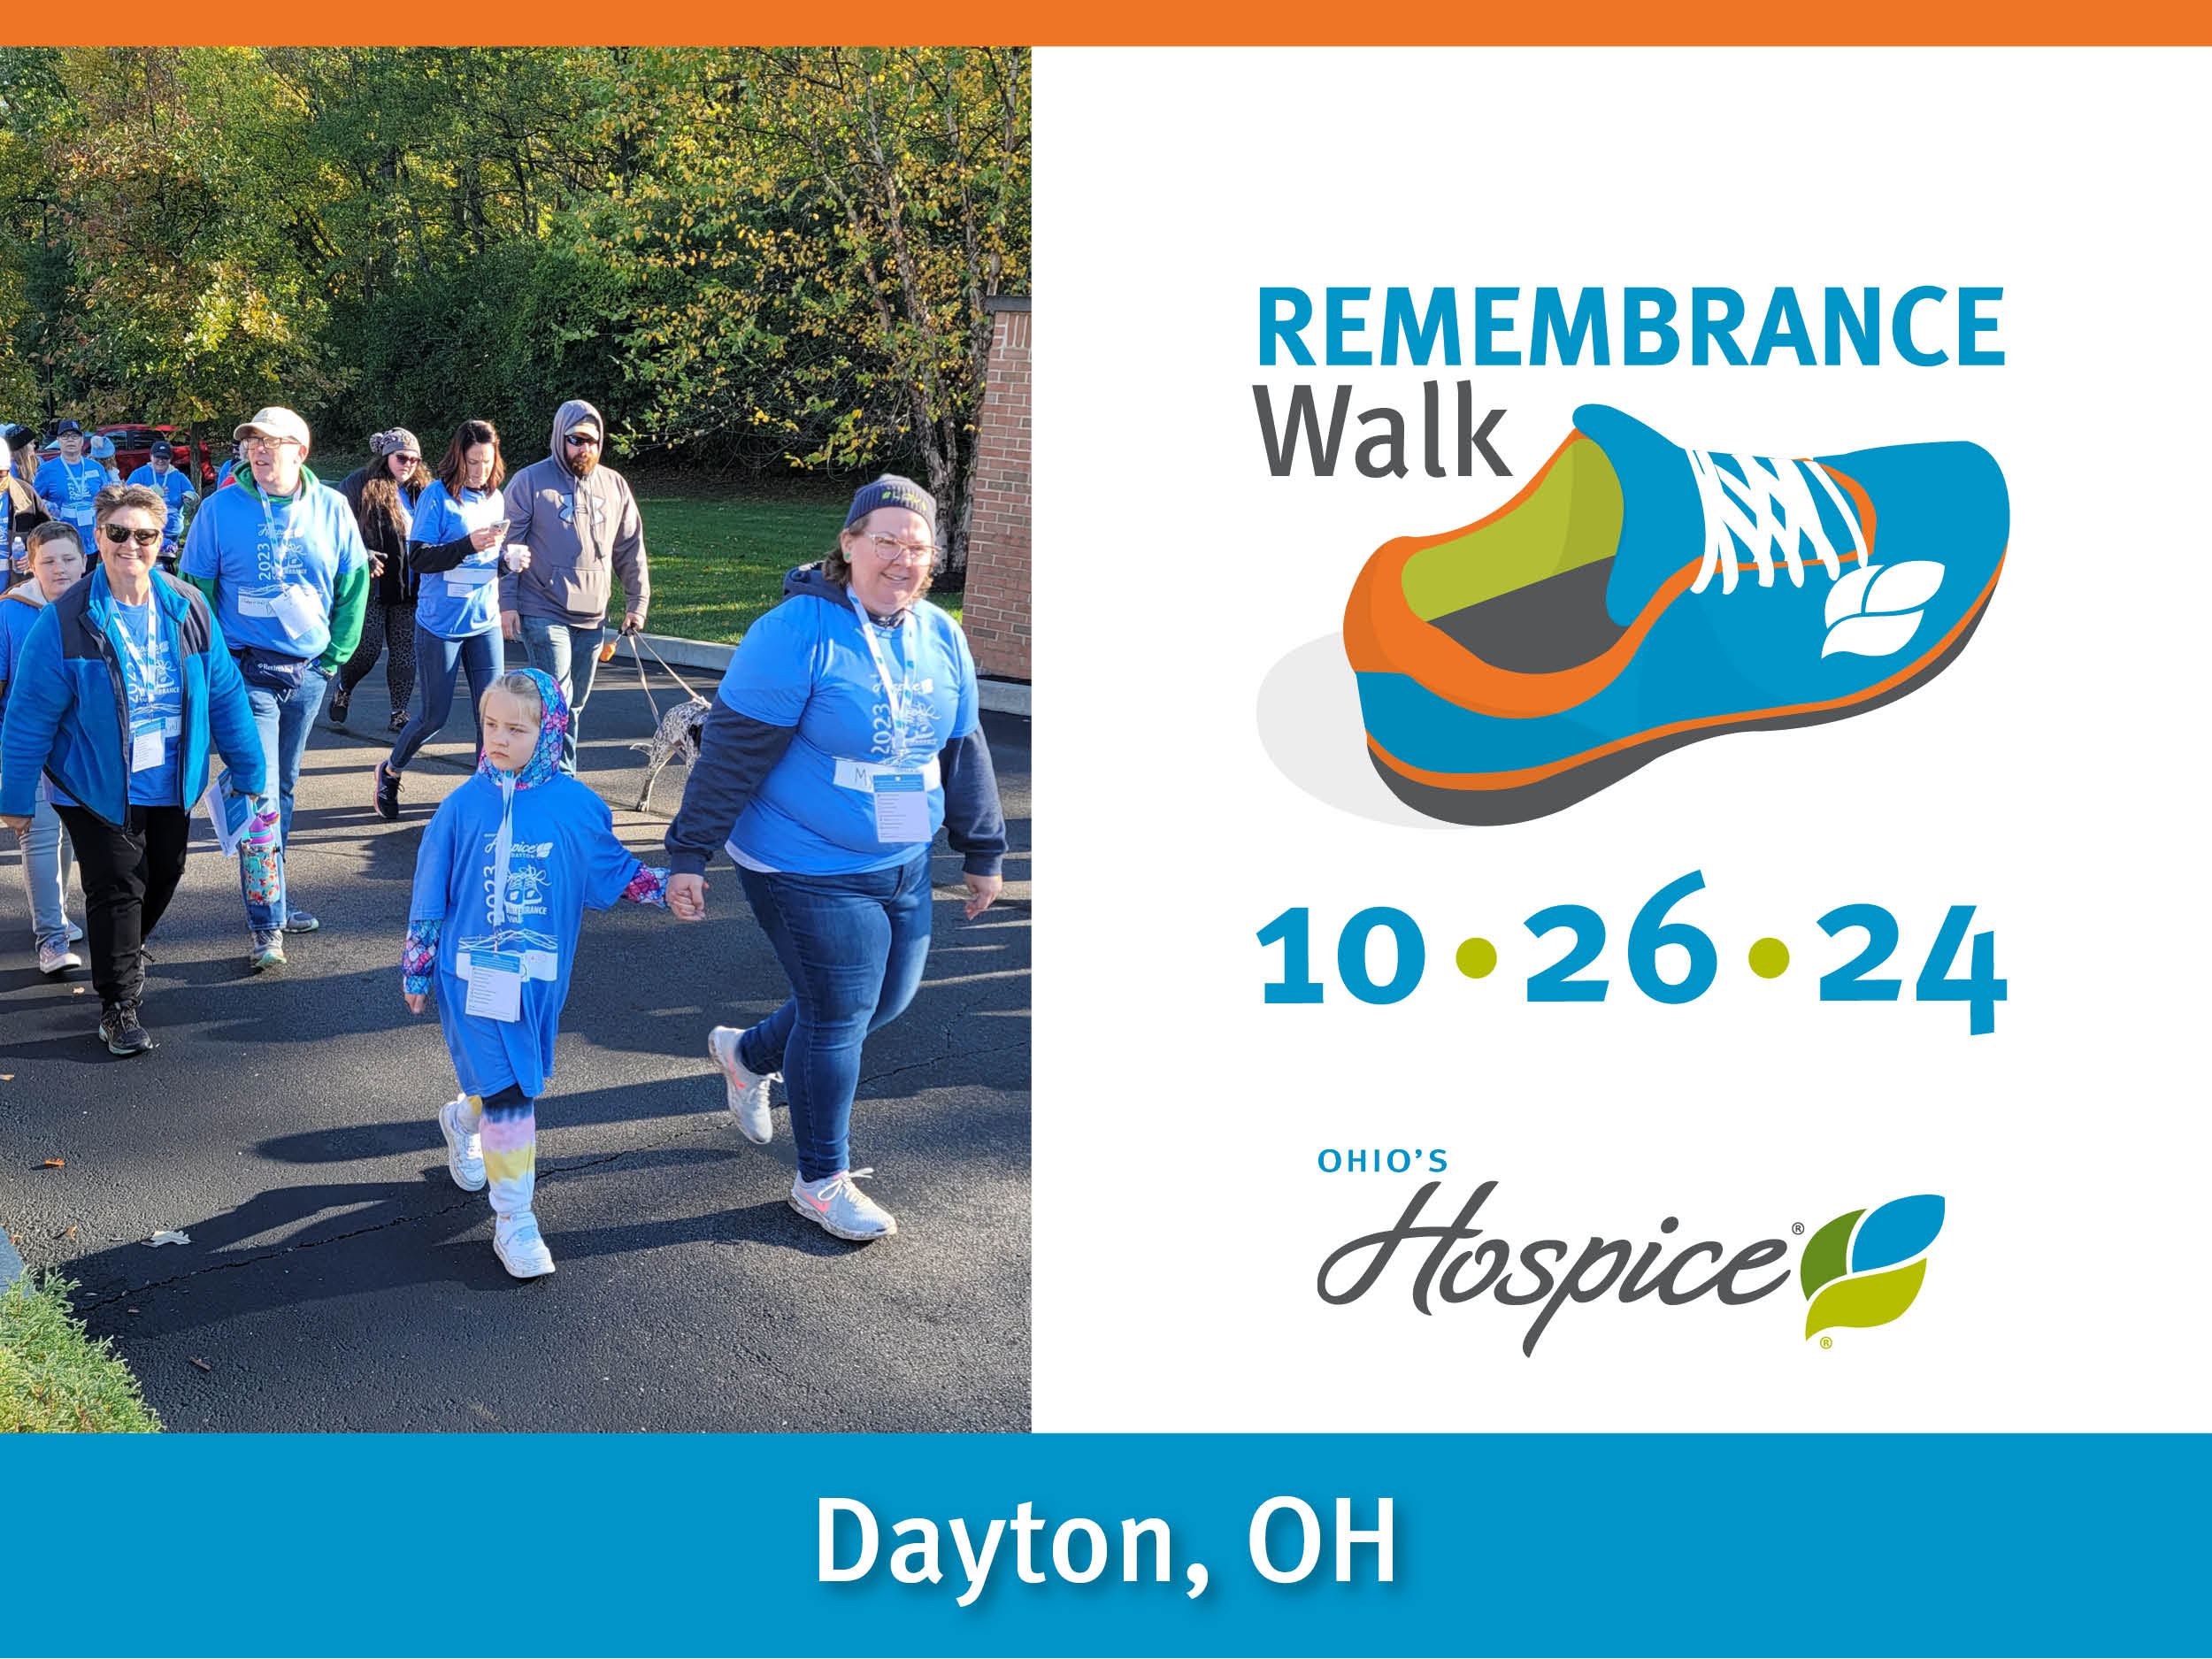 Remembrance Walk 10.26.24 Dayton, OH